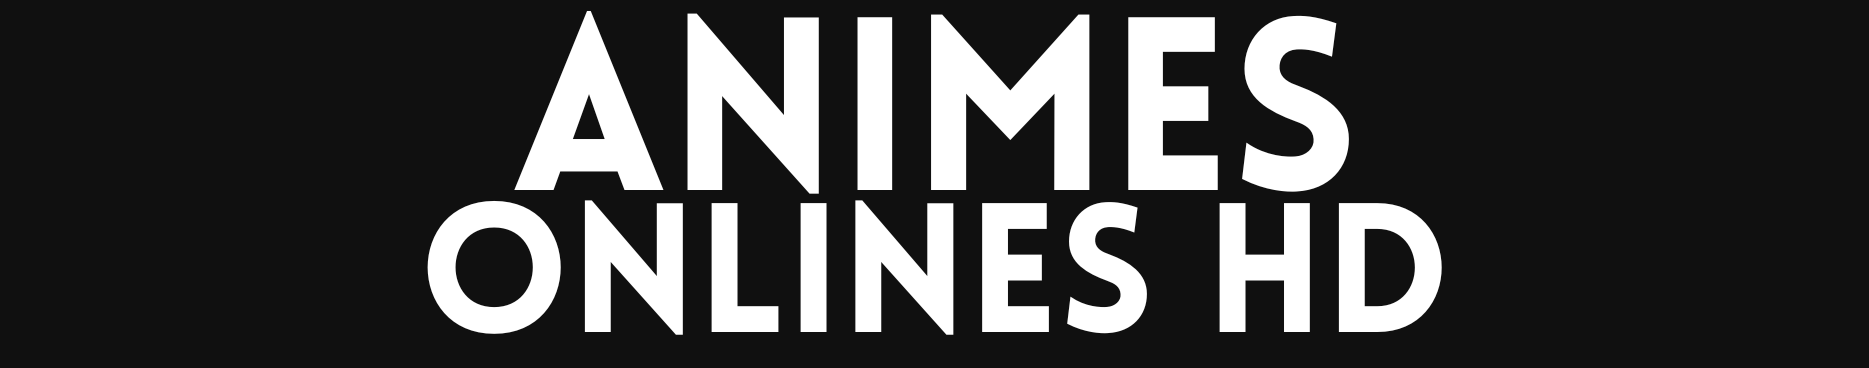 AnimesOnlinesHD - Filmes, Séries, Animes, Novelas, Canais Online Grátis